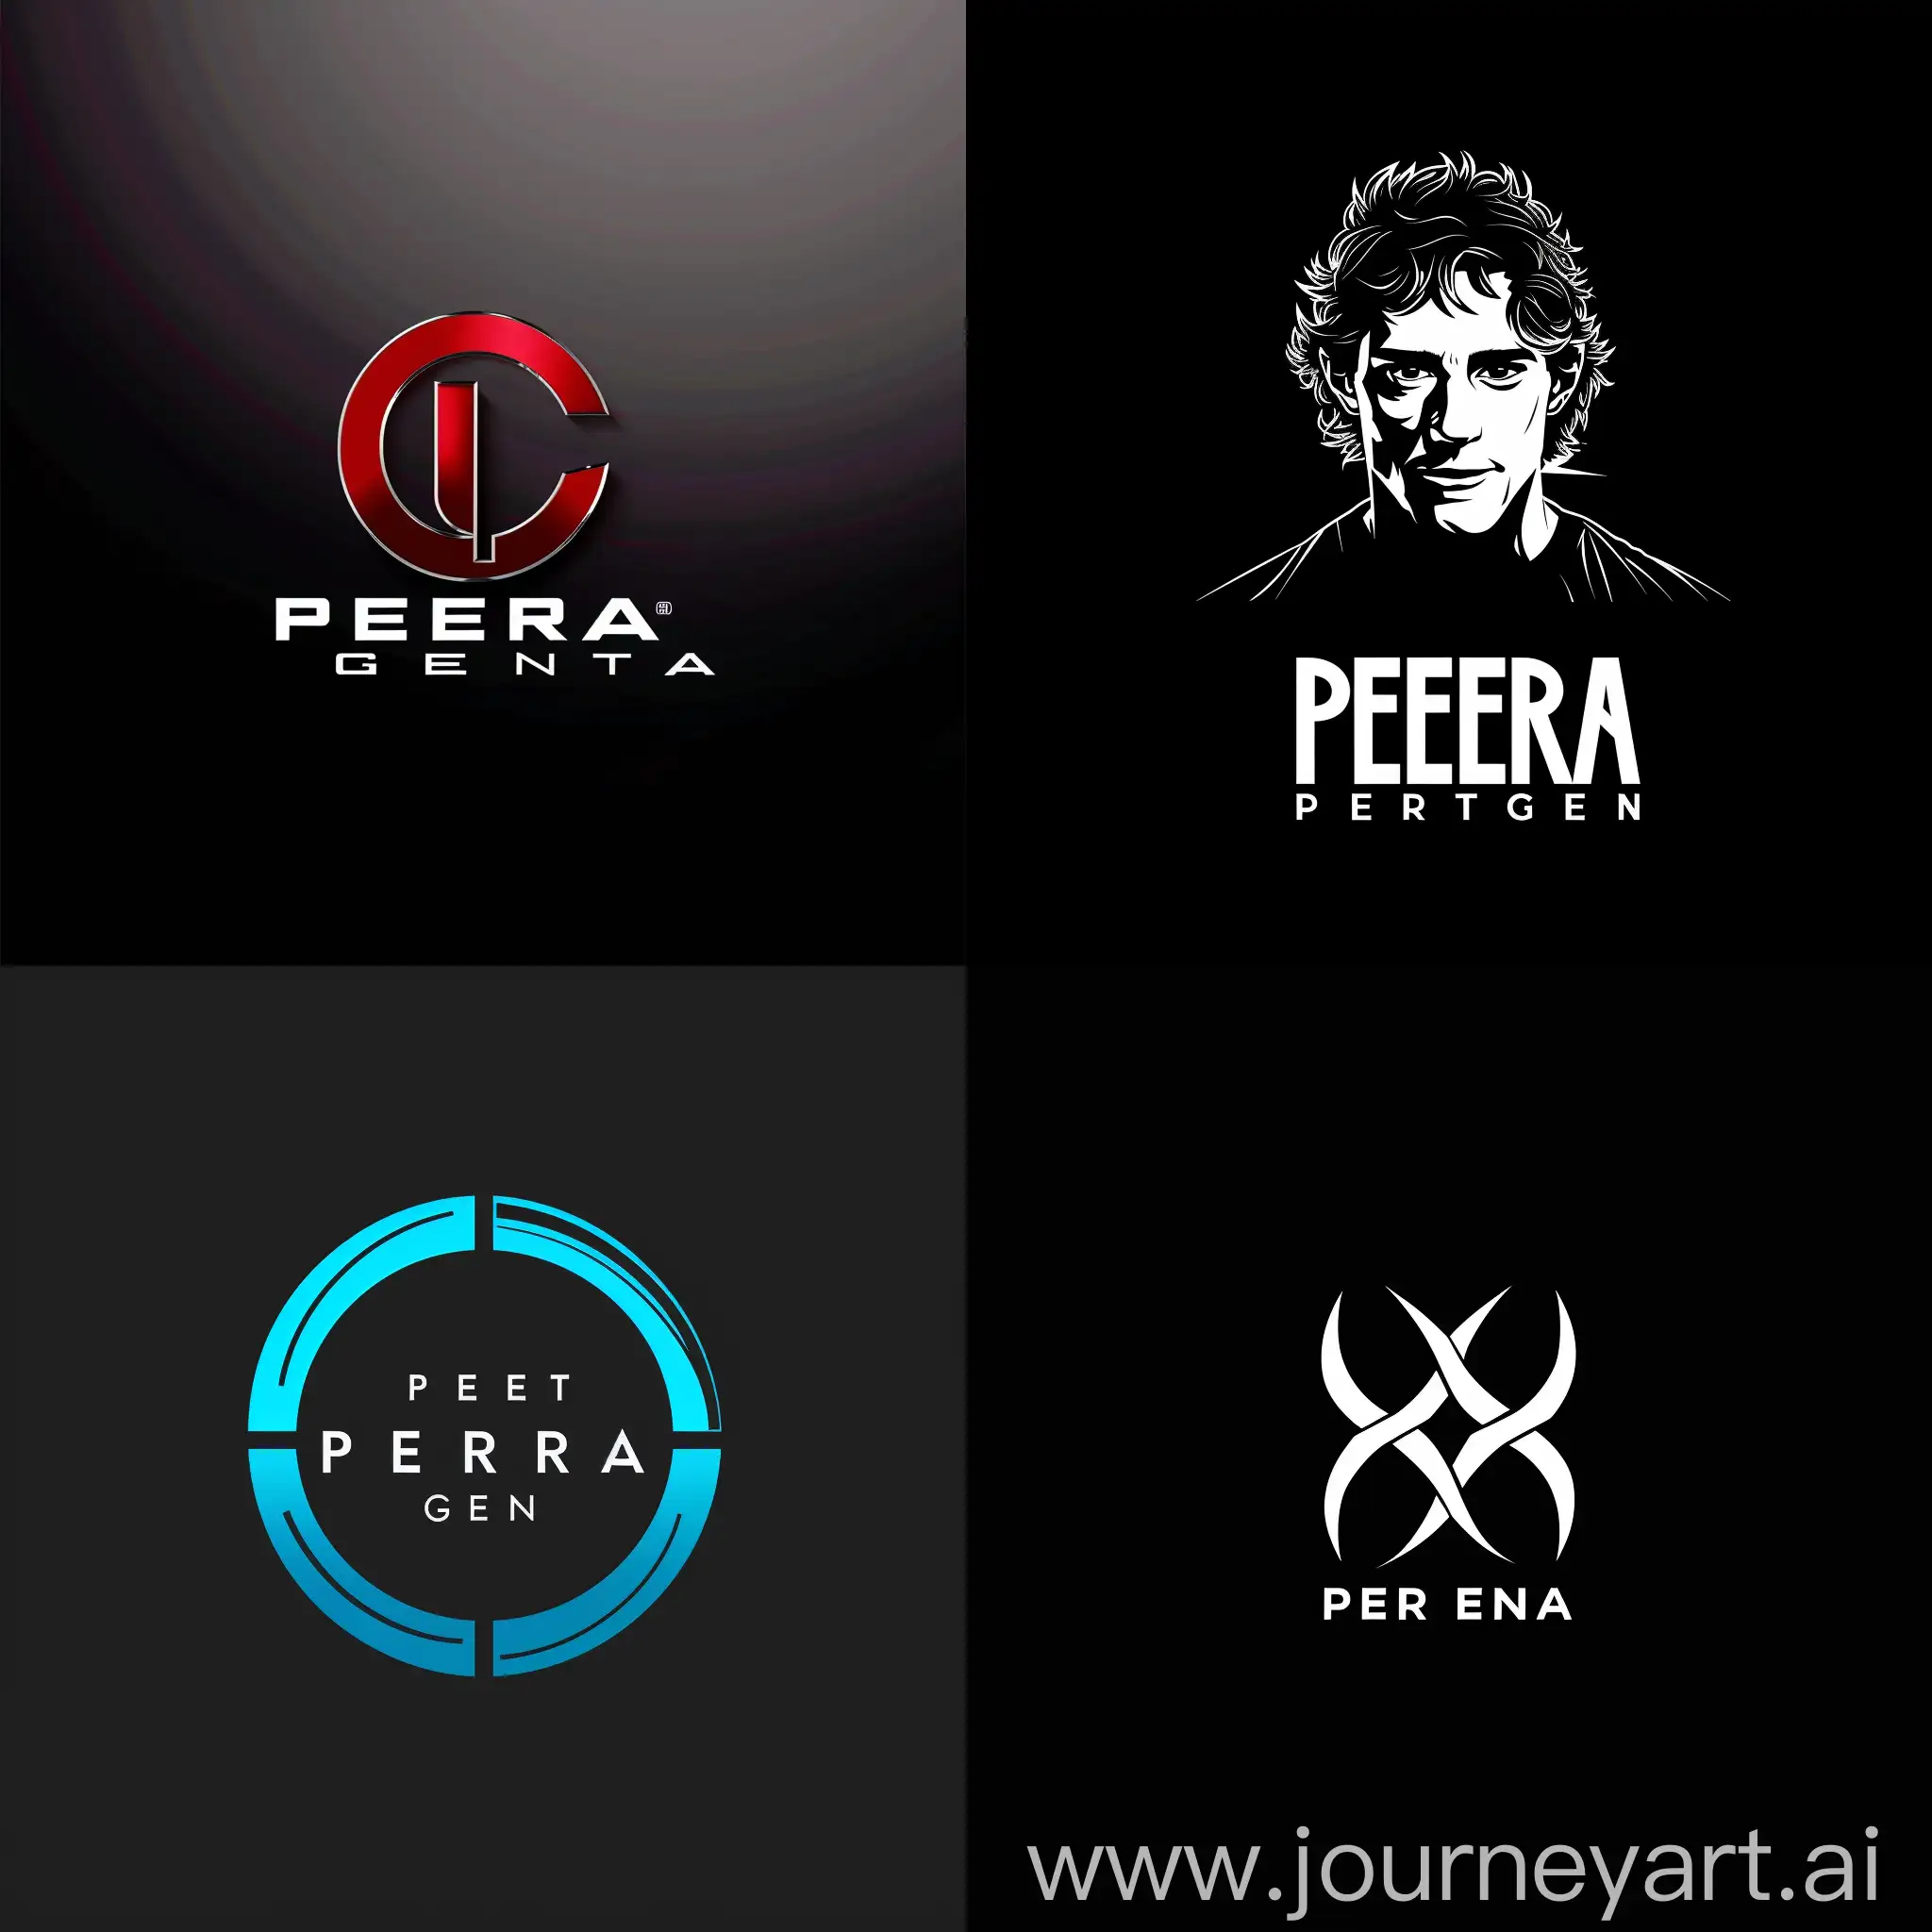 logo with text peter cena